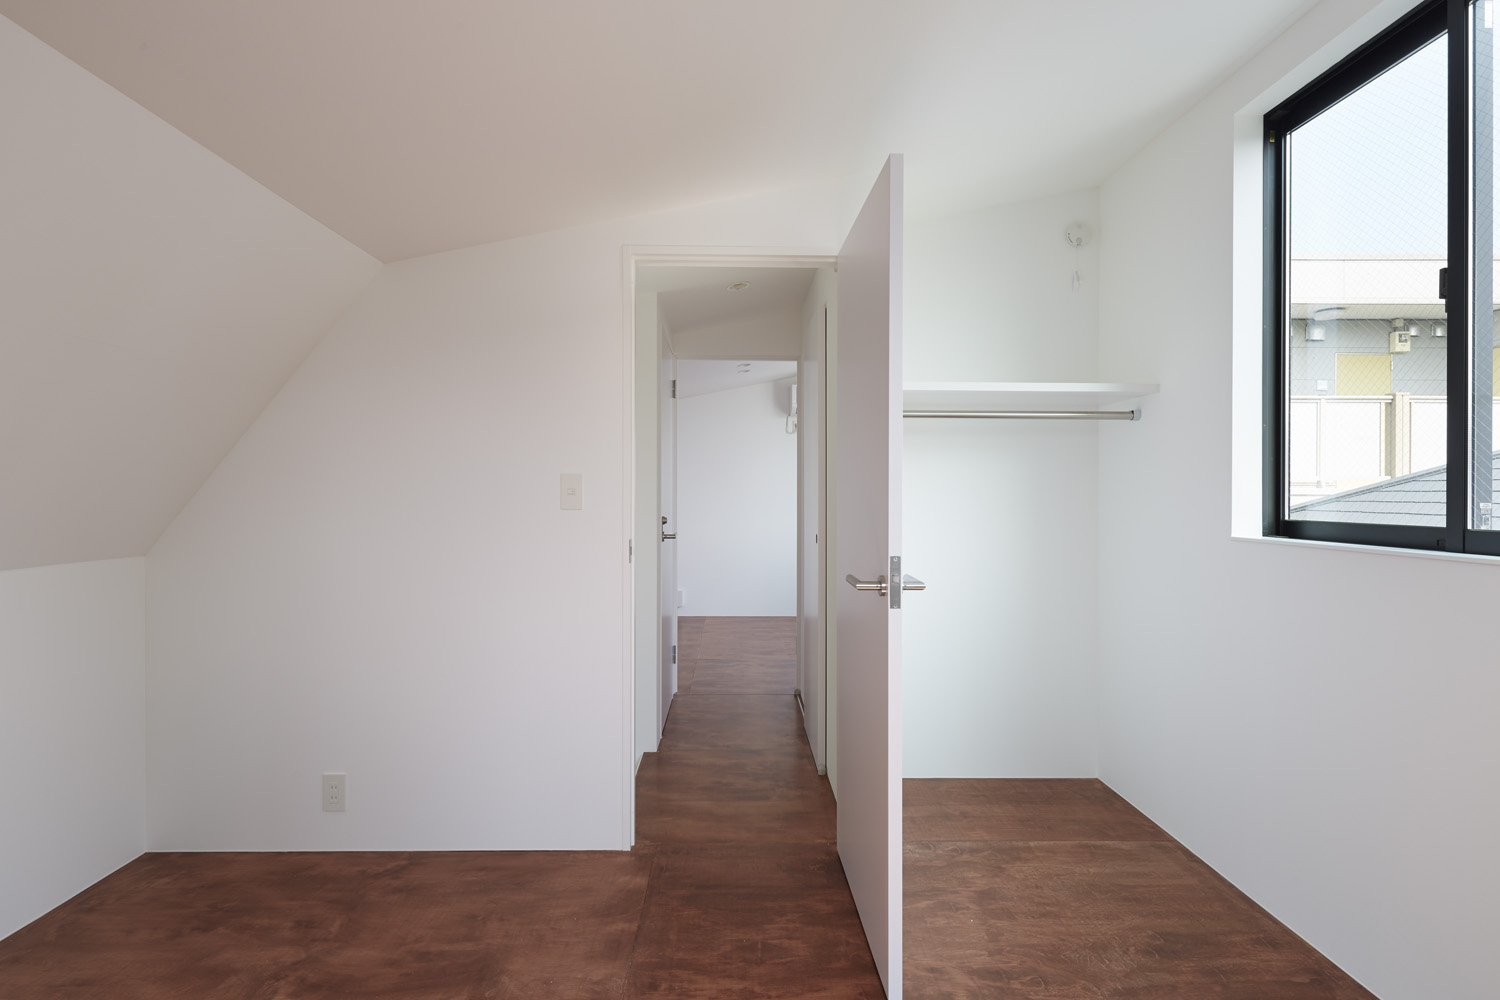 ３階には個室を２室配置。界壁は、将来、少しの改修で一室空間として利用できるよう、非構造壁としている。